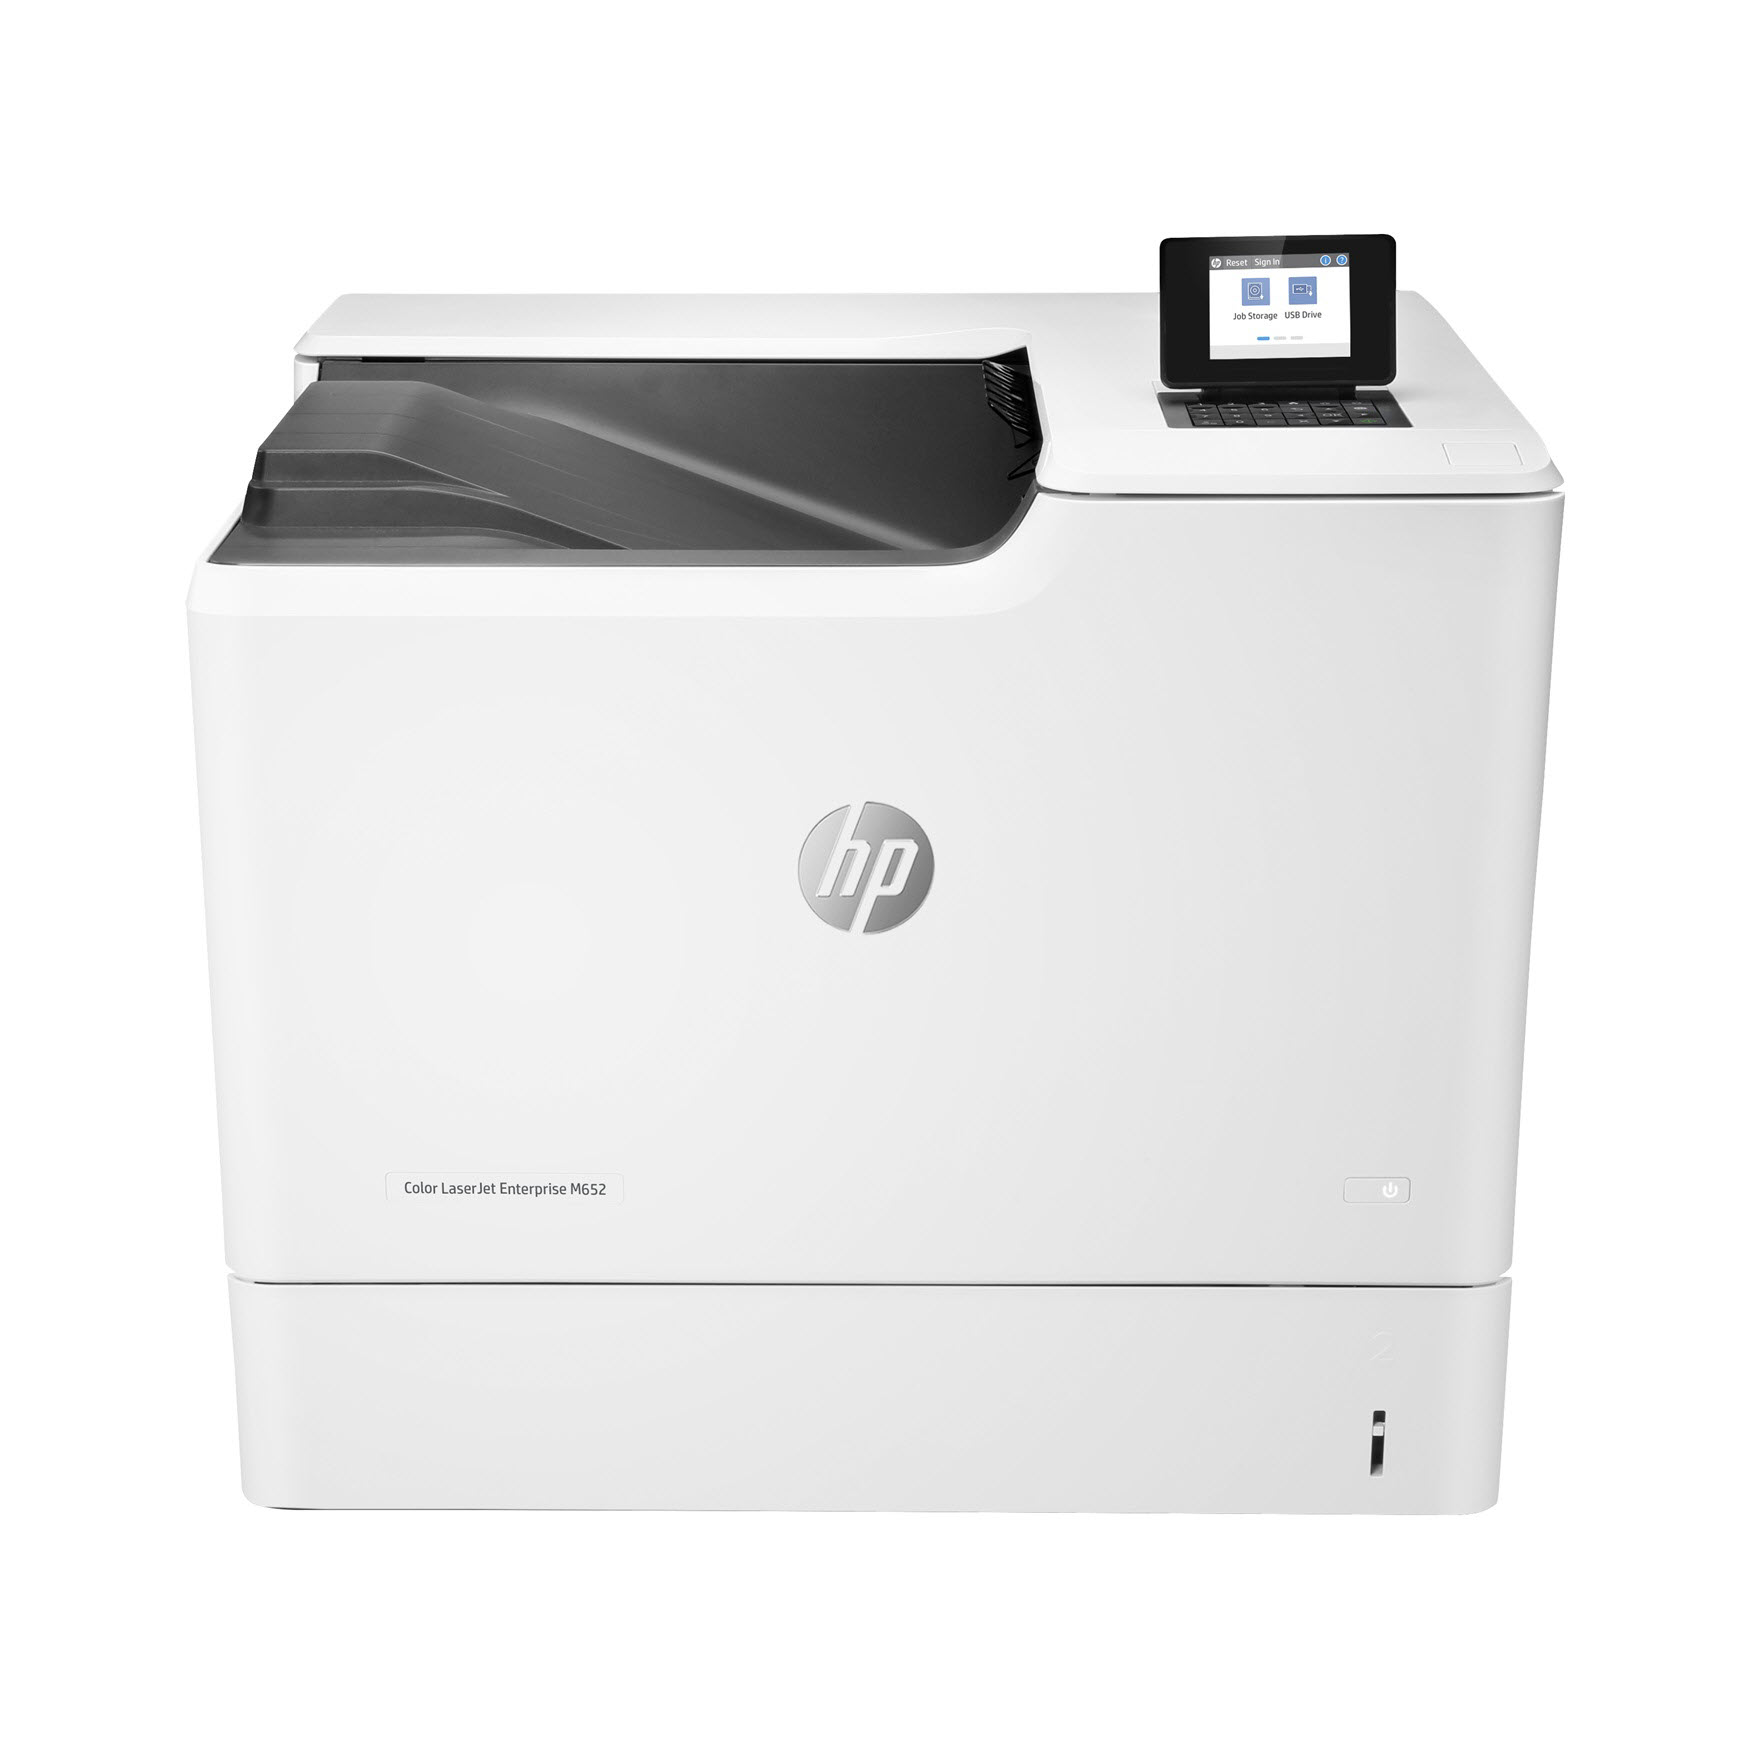 HP Color LaserJet Enterprise M652